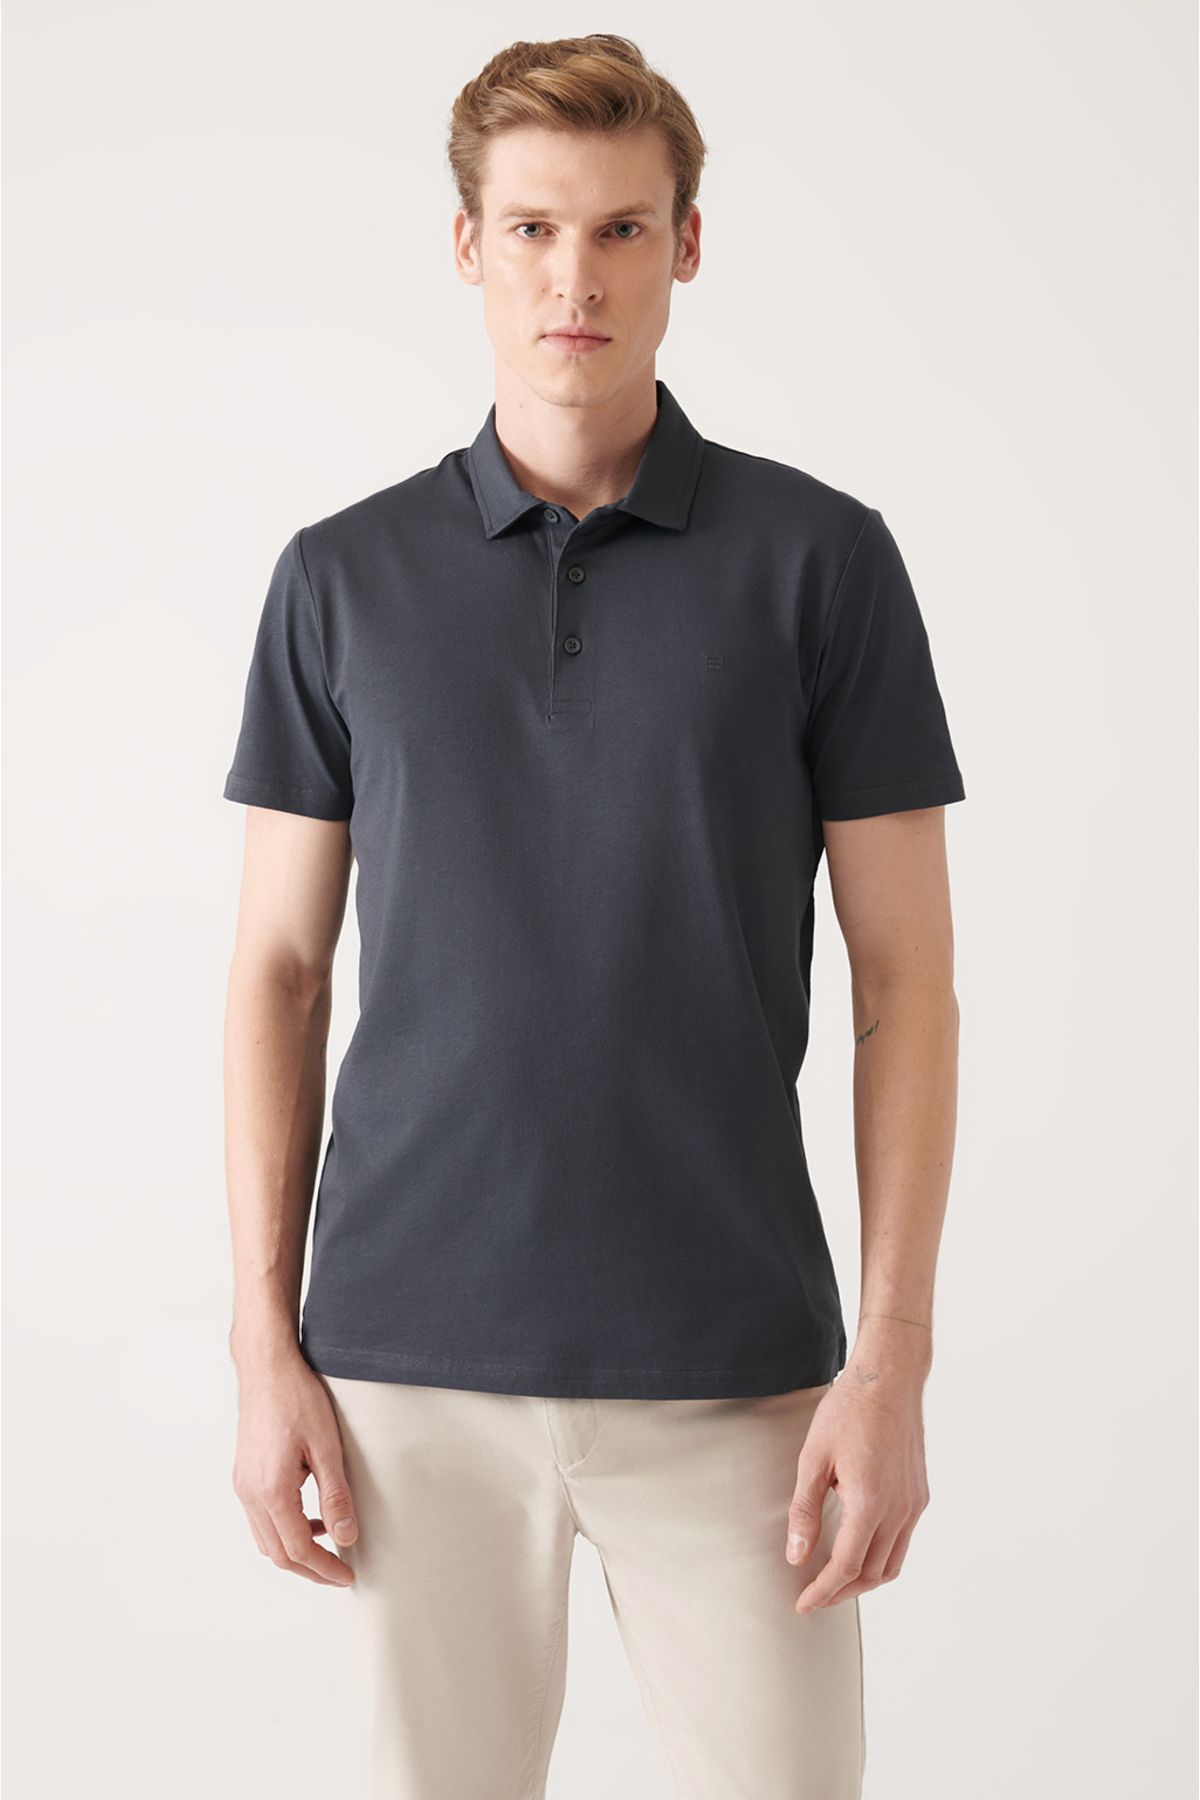 Avva Erkek Antrasit %100 Pamuk Regular Fit 3 Düğmeli Kıvrılmaz Polo Yaka T-shirt E001035